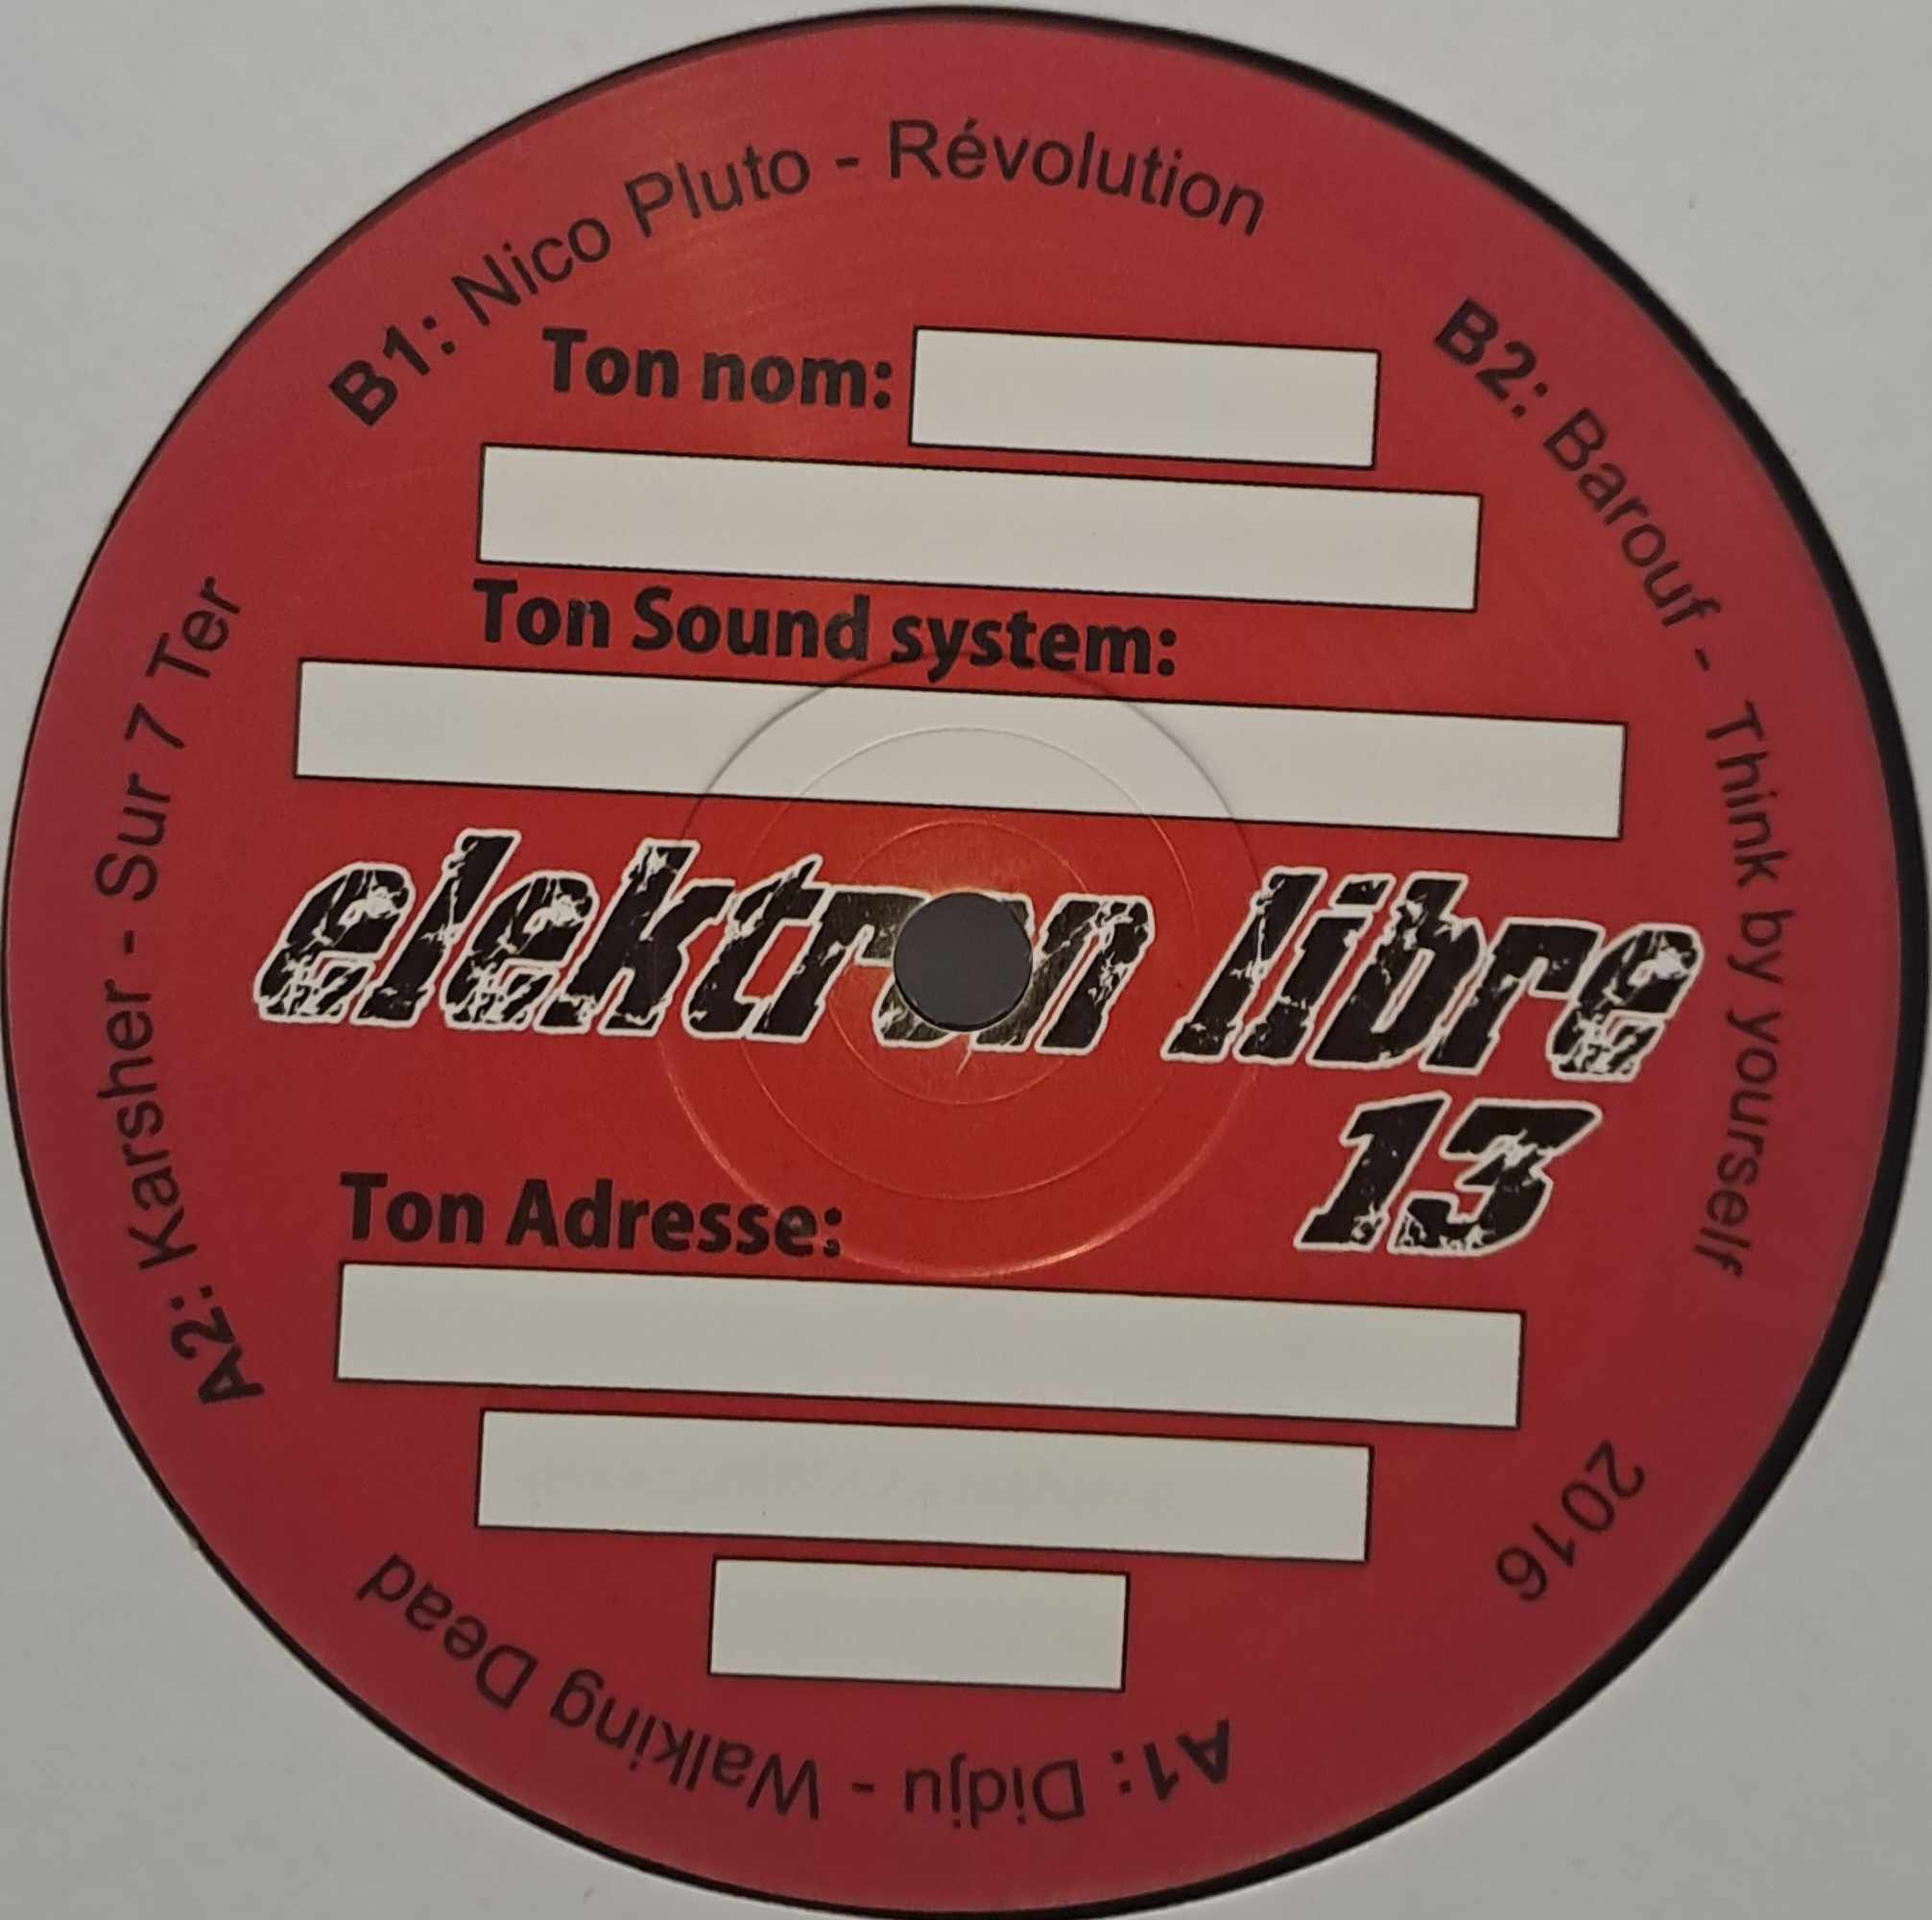 Elektron Libre 013 - vinyle techno